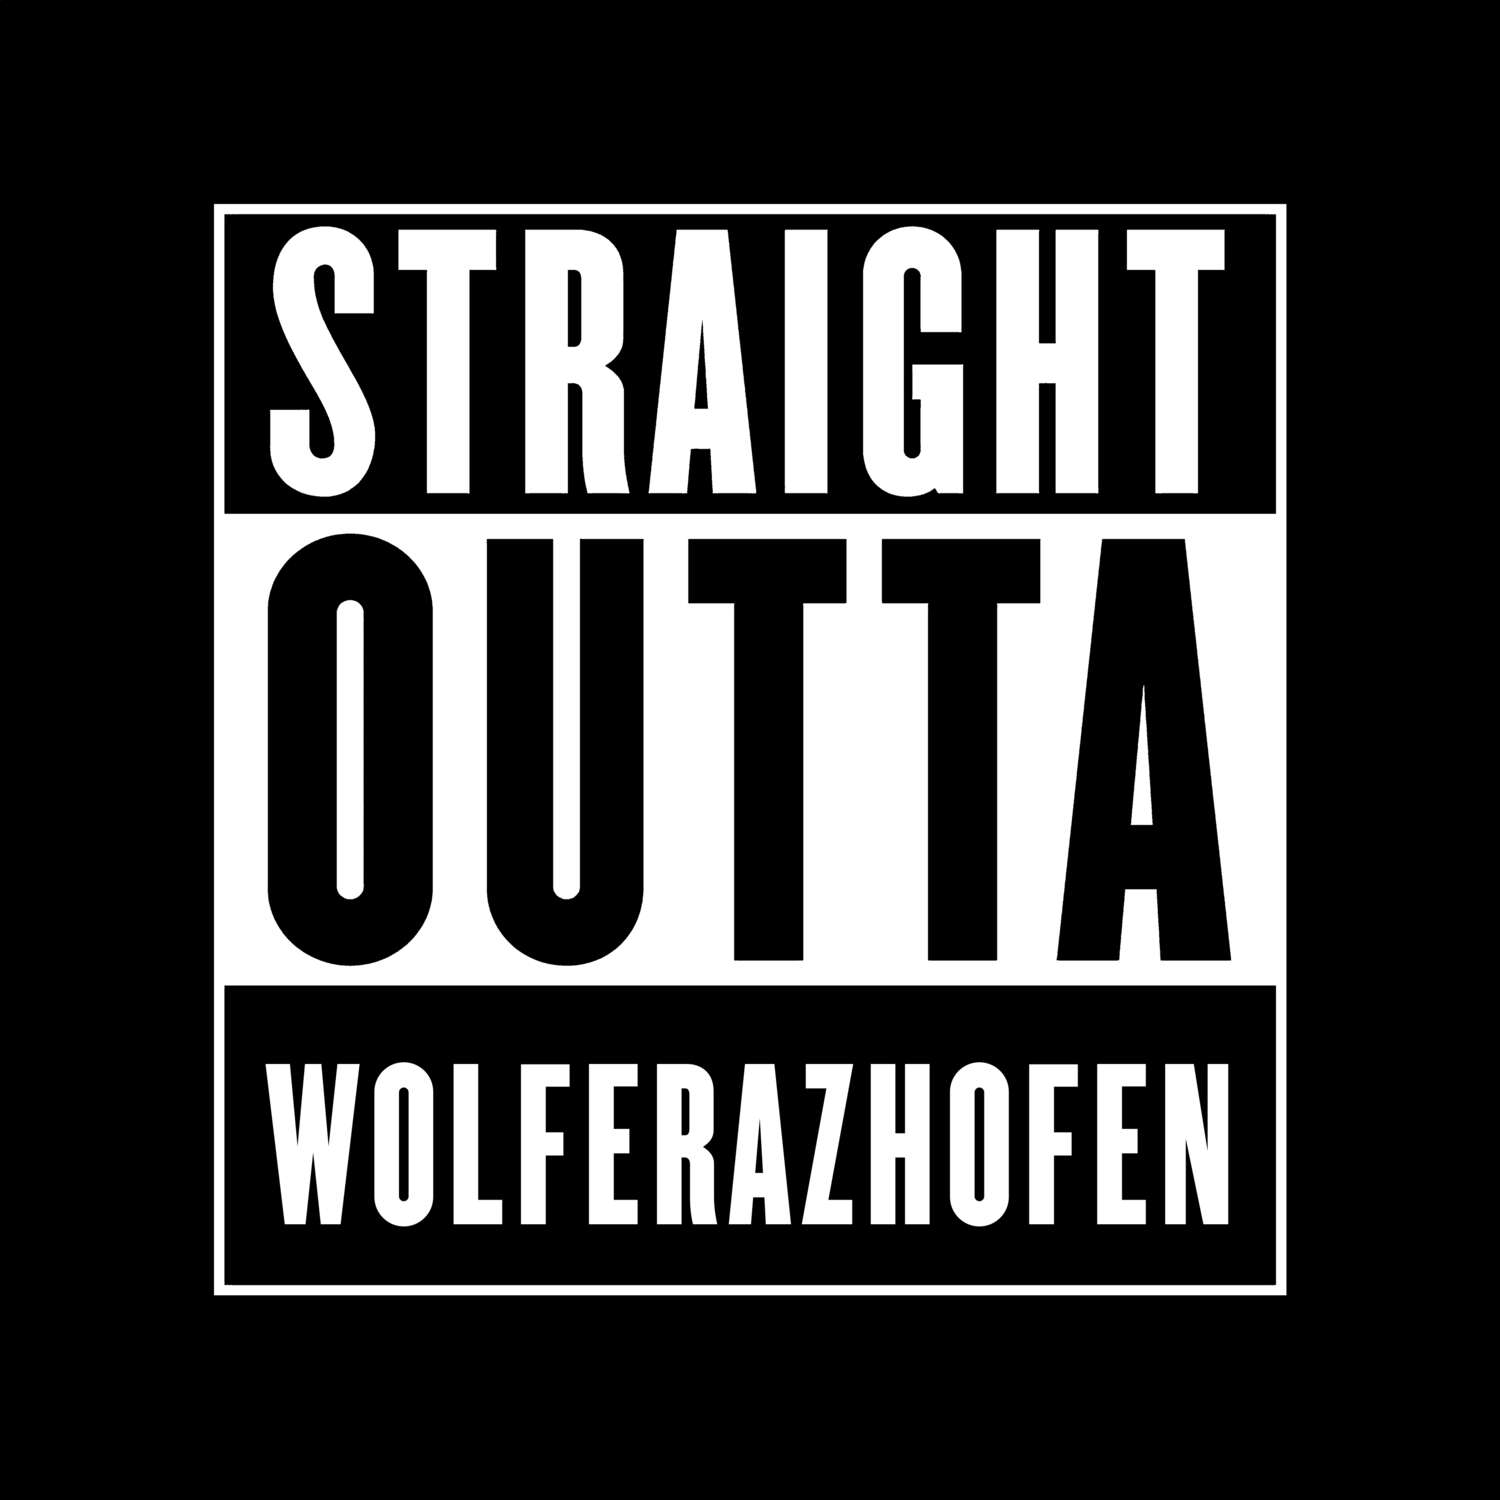 Wolferazhofen T-Shirt »Straight Outta«